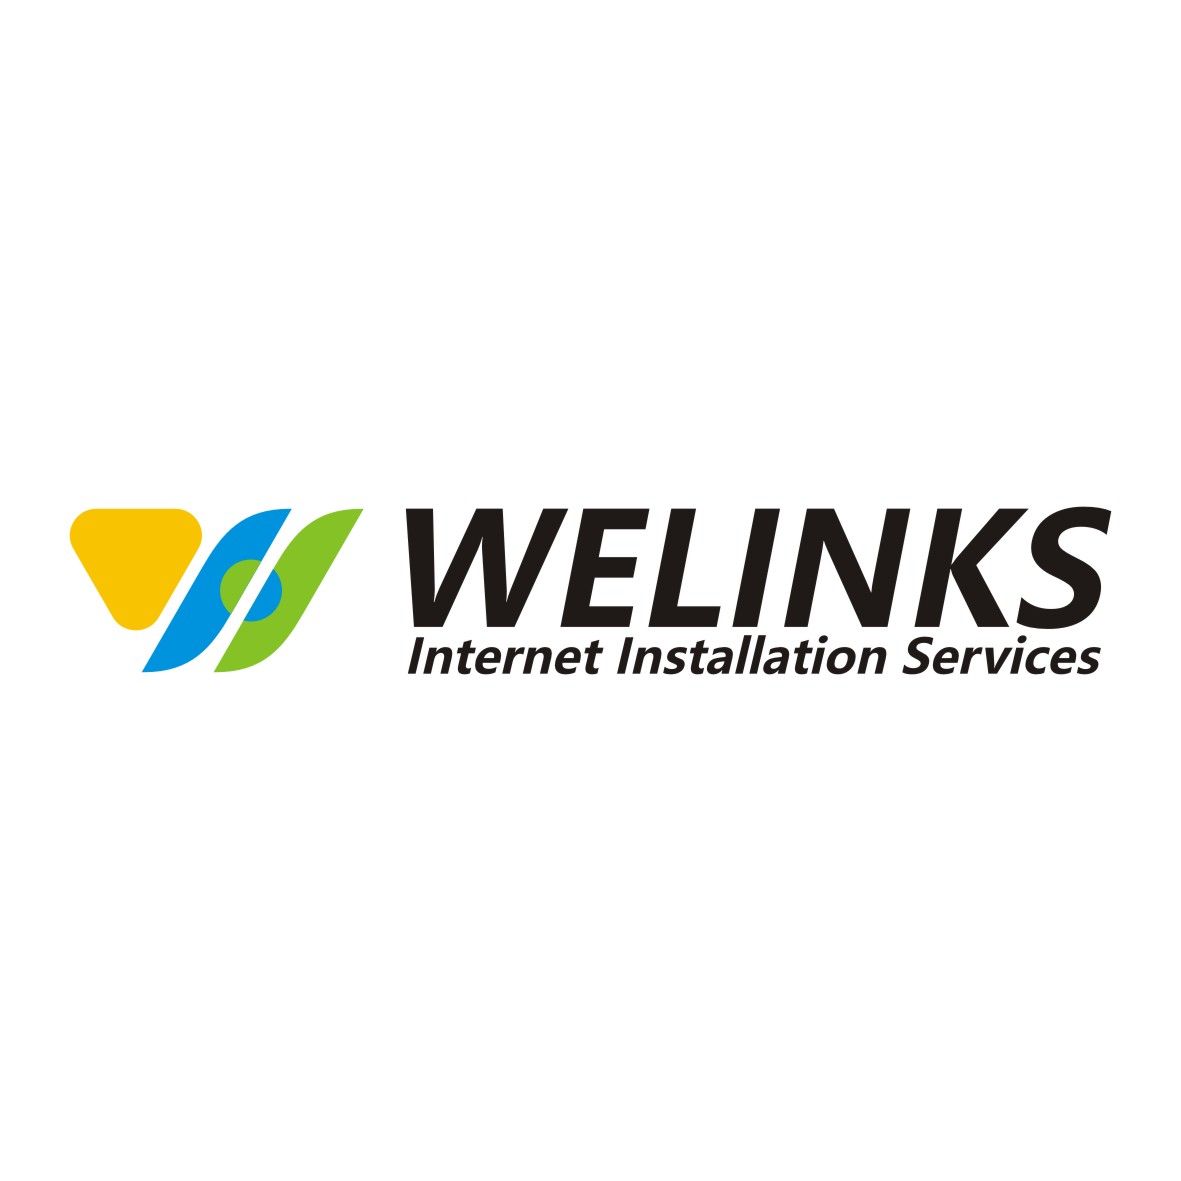 WELINKS Internet Installation Services